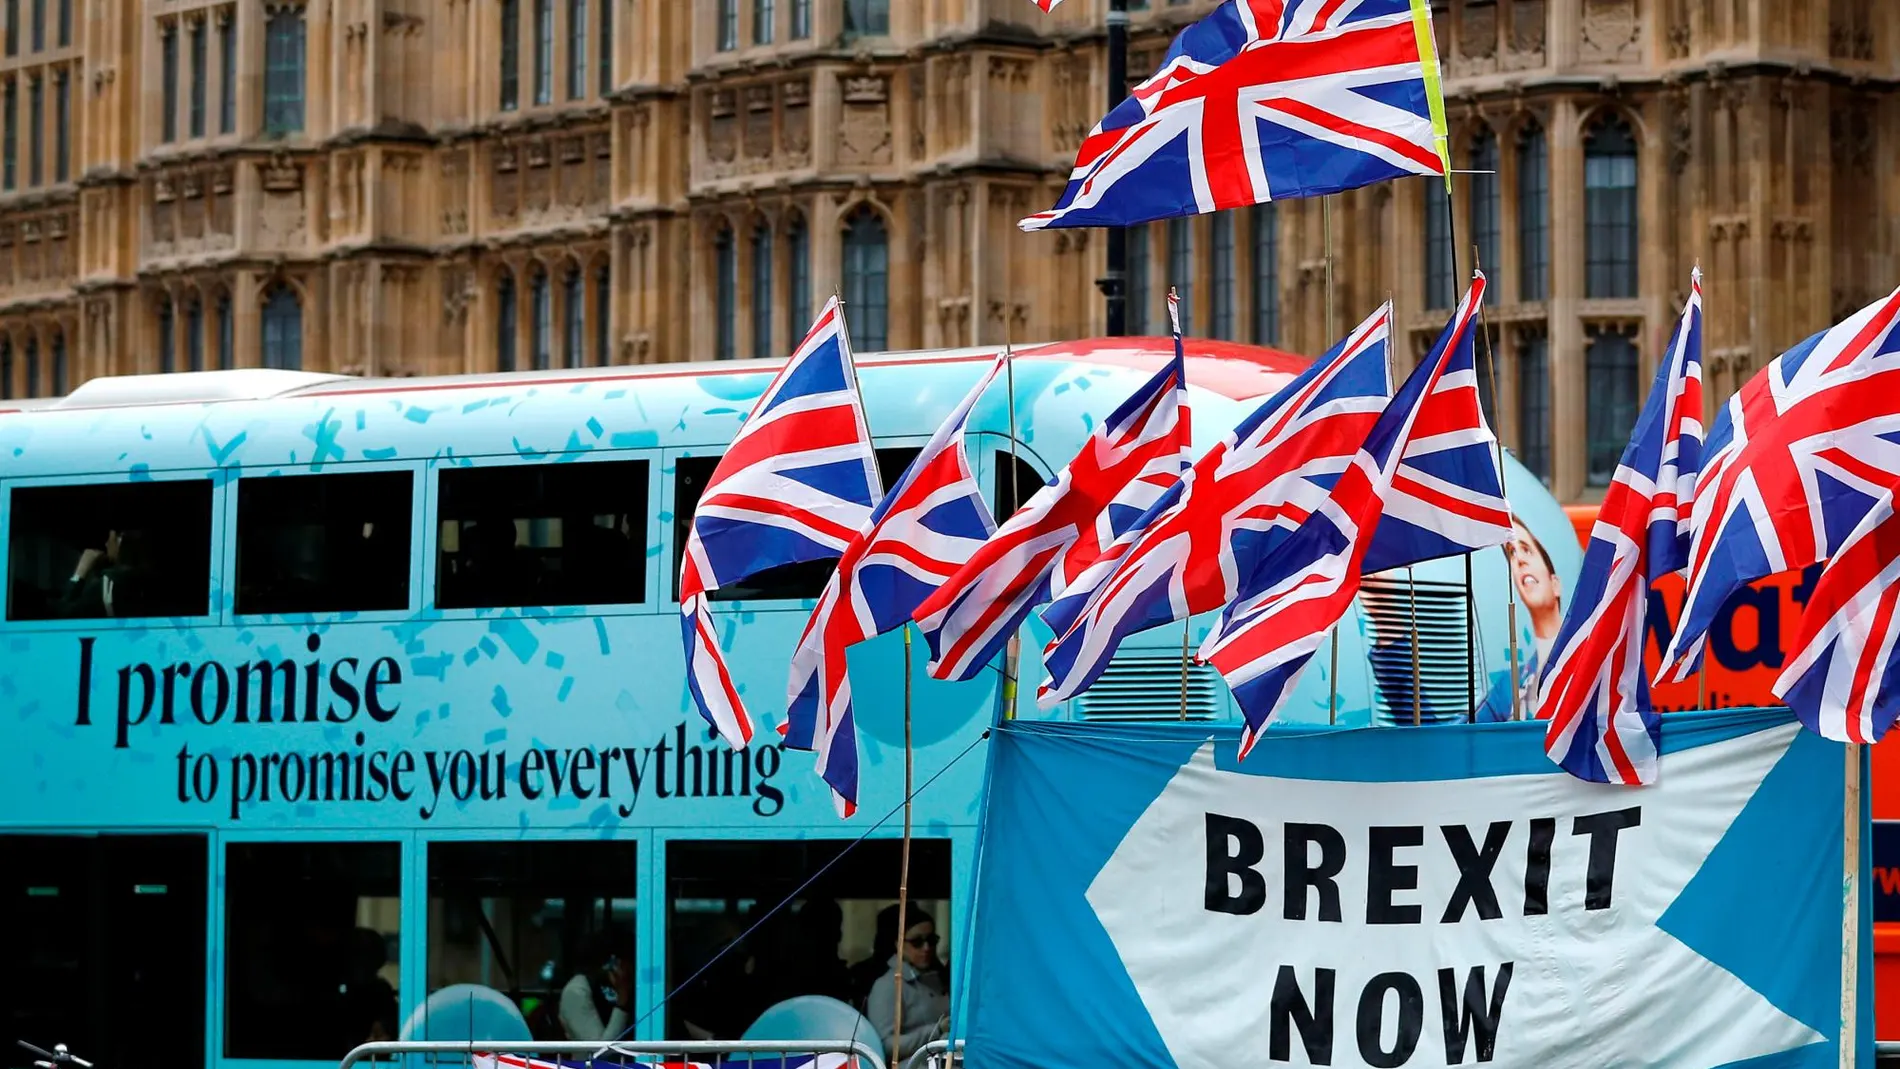 Un autocar hace campaña por el brexit "no"